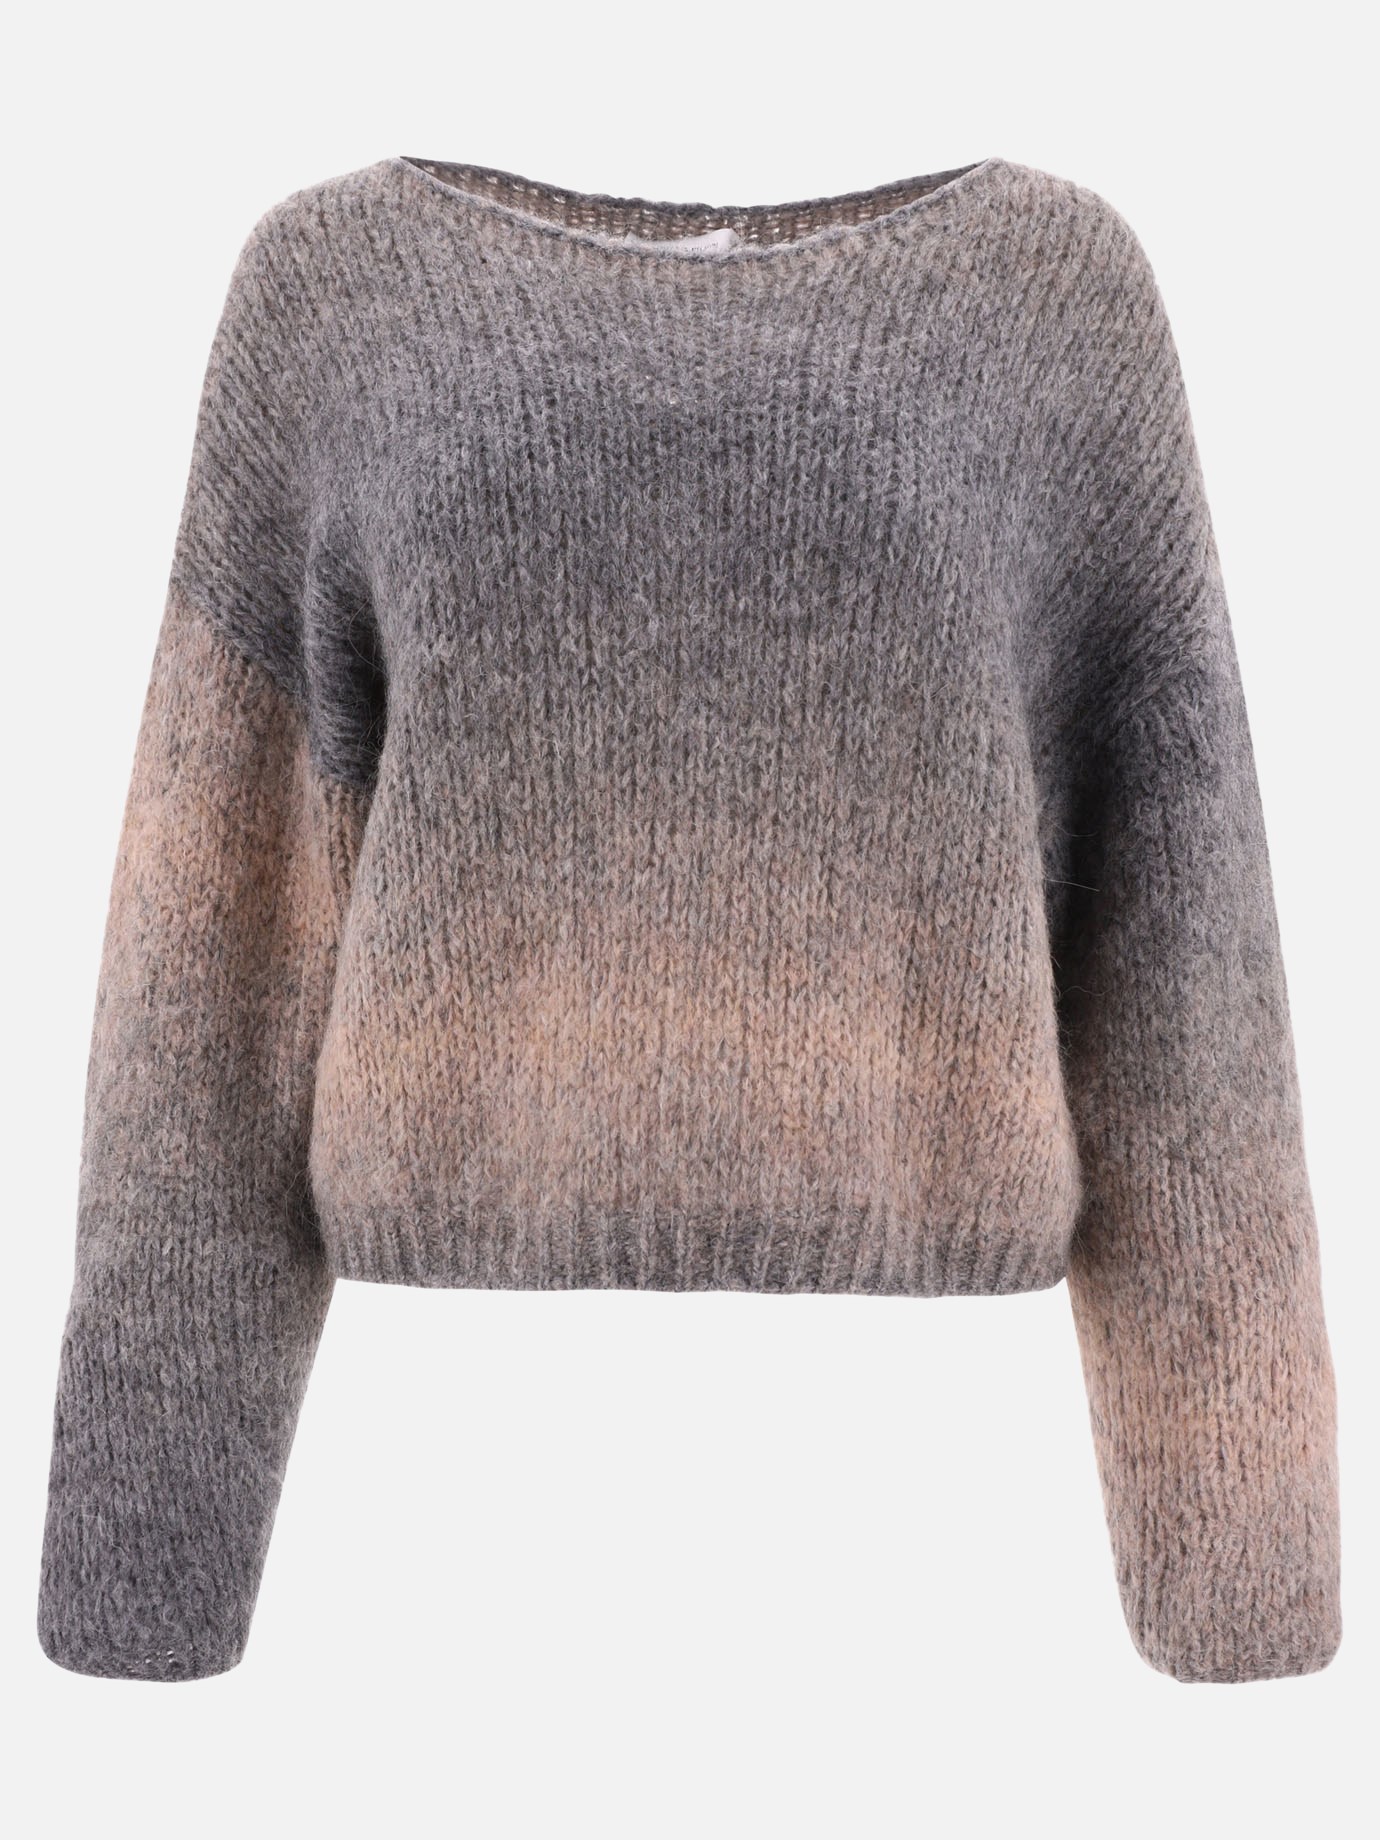 Gradient sweaterby Fabiana Filippi - 3